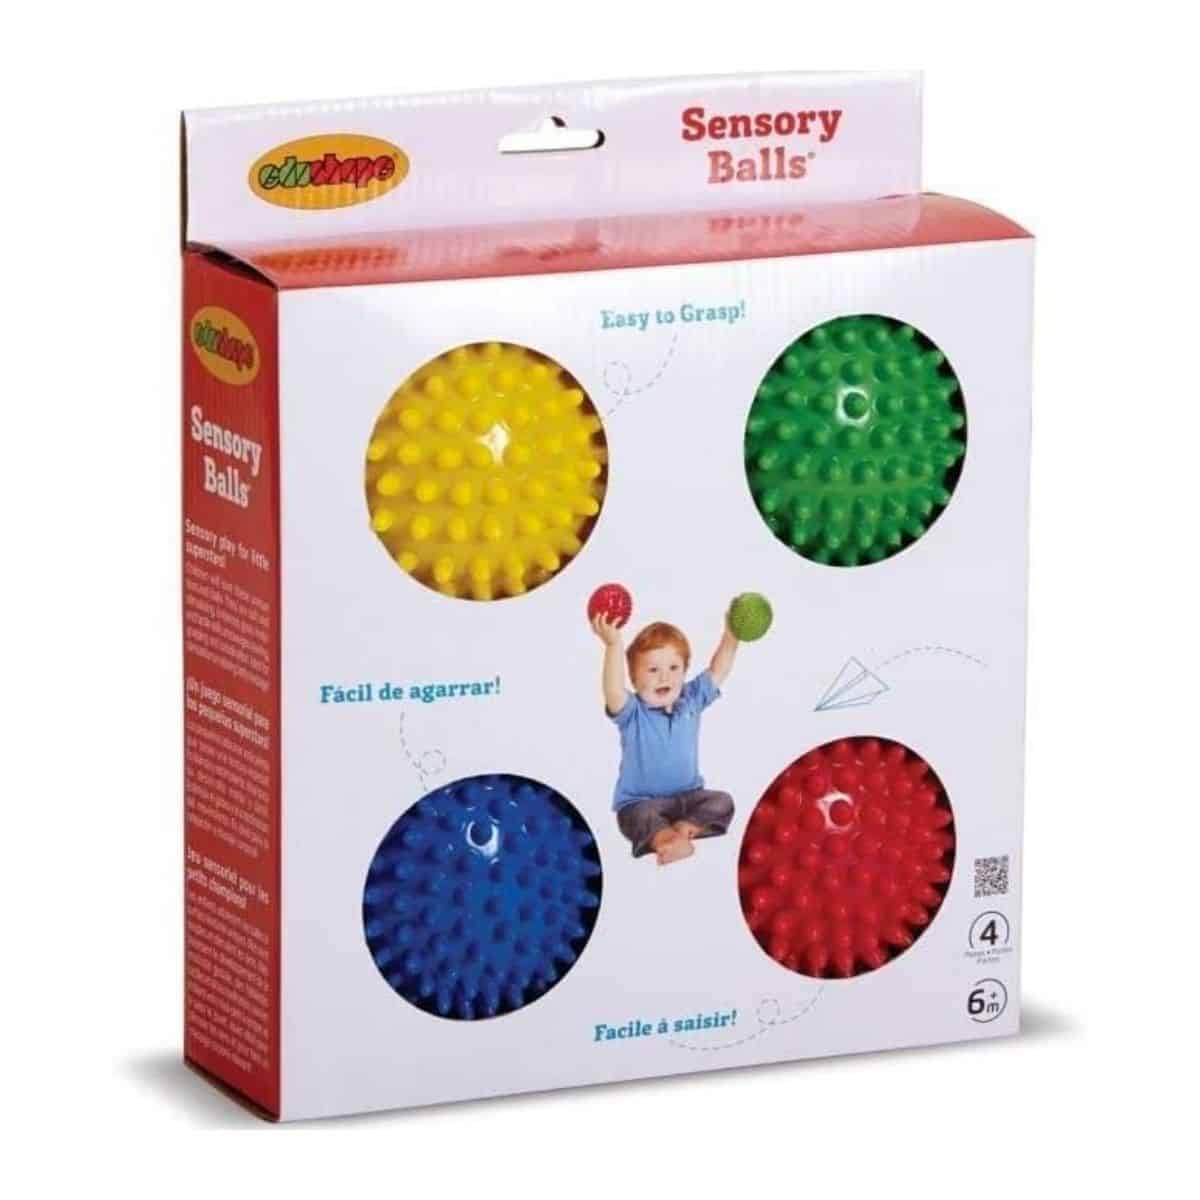 Boule Spatiale 3 Pièces-balle En Mousse Légère Et Très  Rebondissante-améliore La Coordination Œil-main, Excellente Balle  Sensorielle Pour Les Enfants